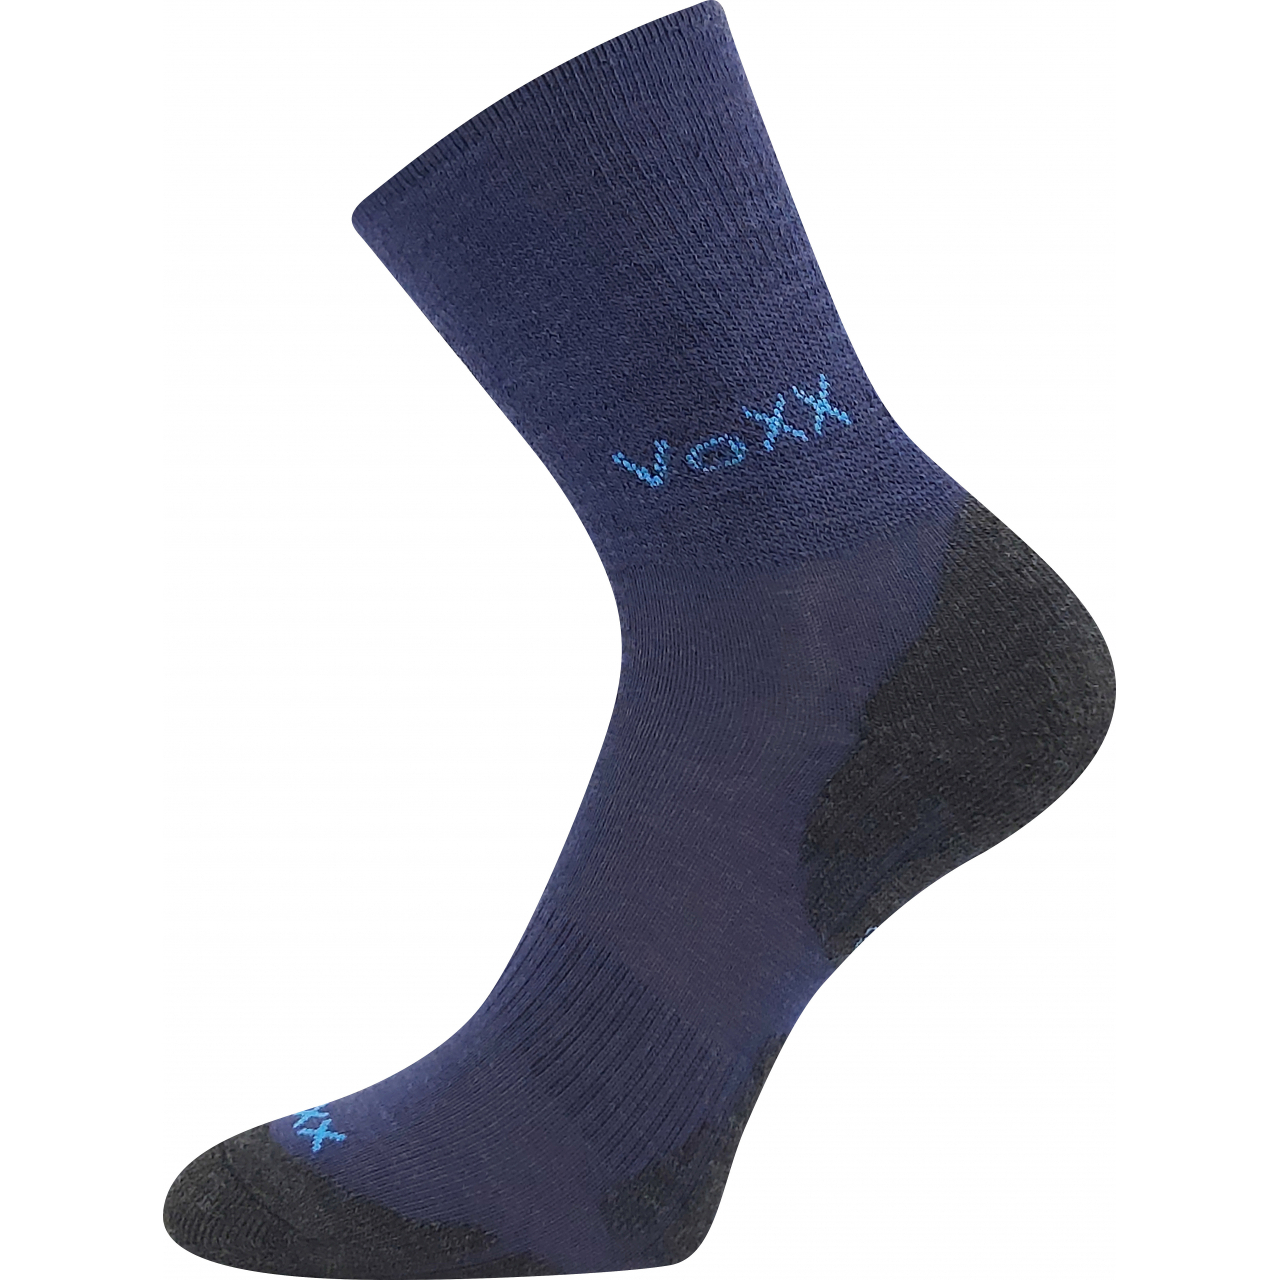 Ponožky zimní dětské Voxx Irizarik - tmavě modré, 20-24